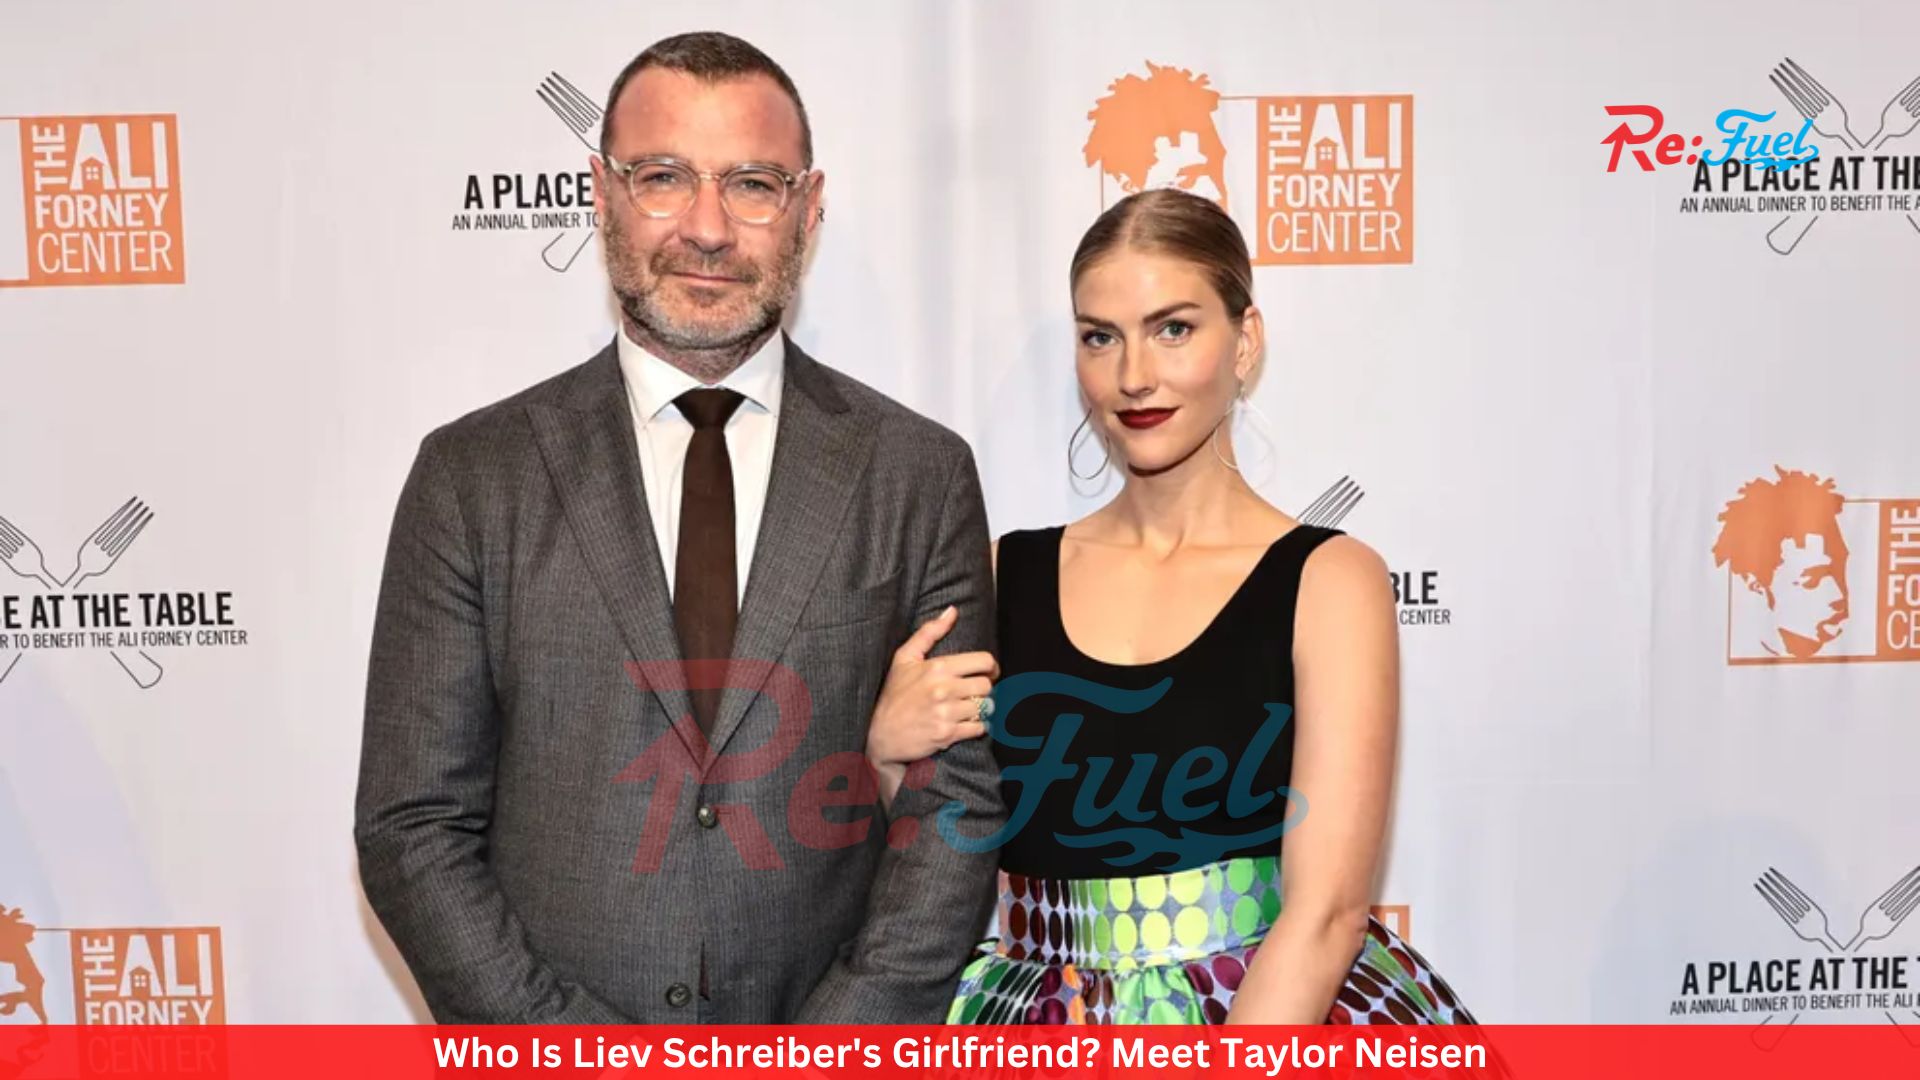 Who Is Liev Schreiber's Girlfriend? Meet Taylor Neisen